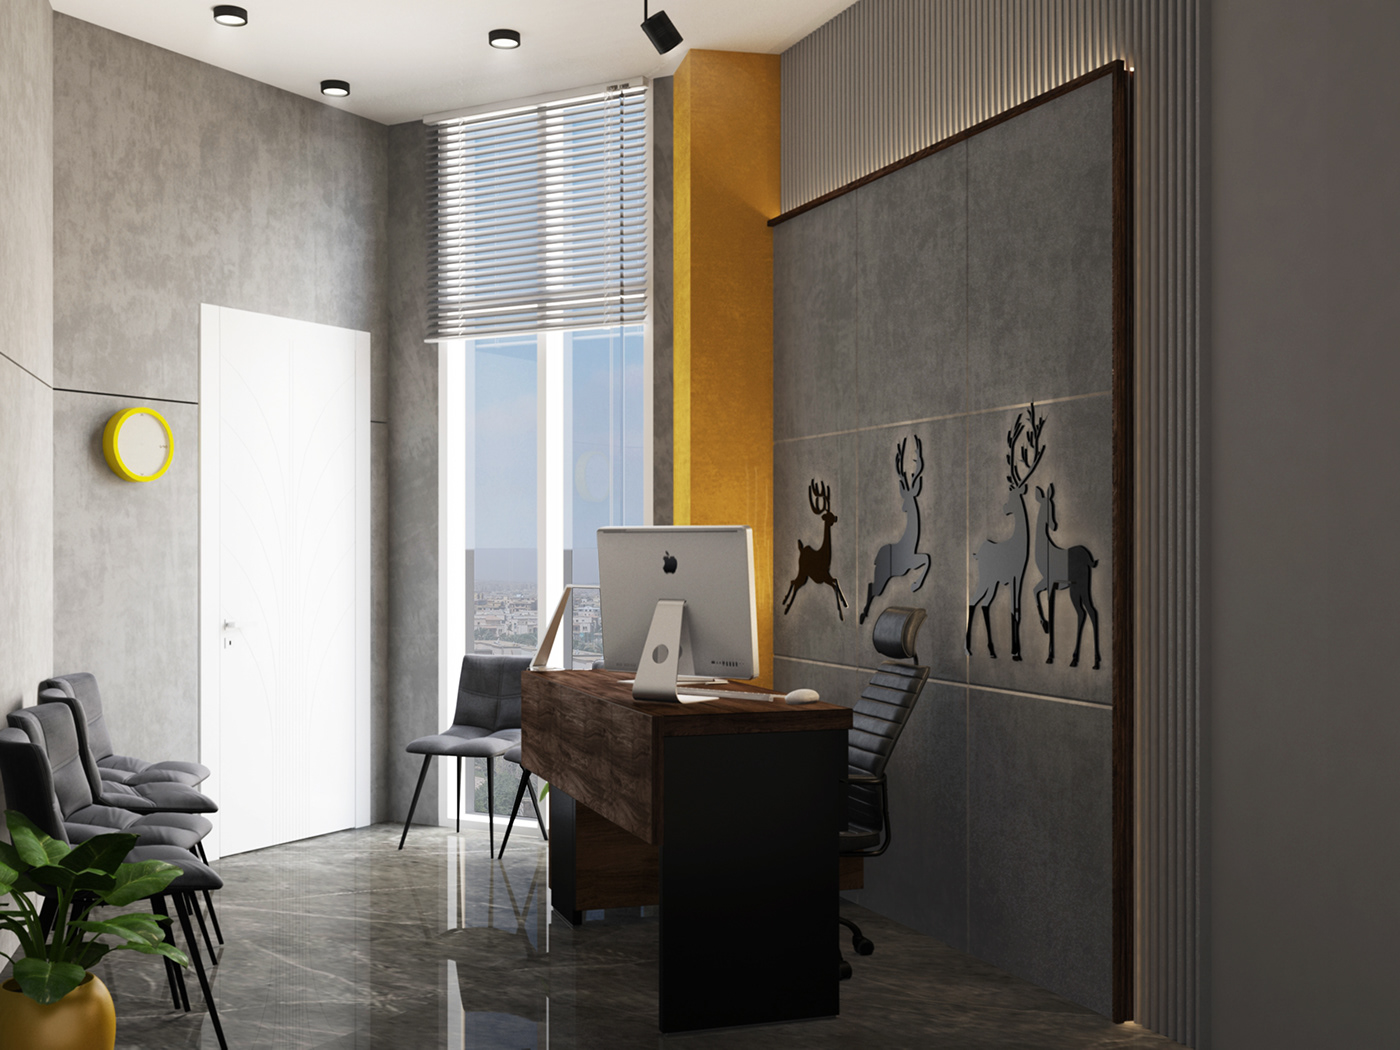 3ds max architecture design interior design  visualization vray